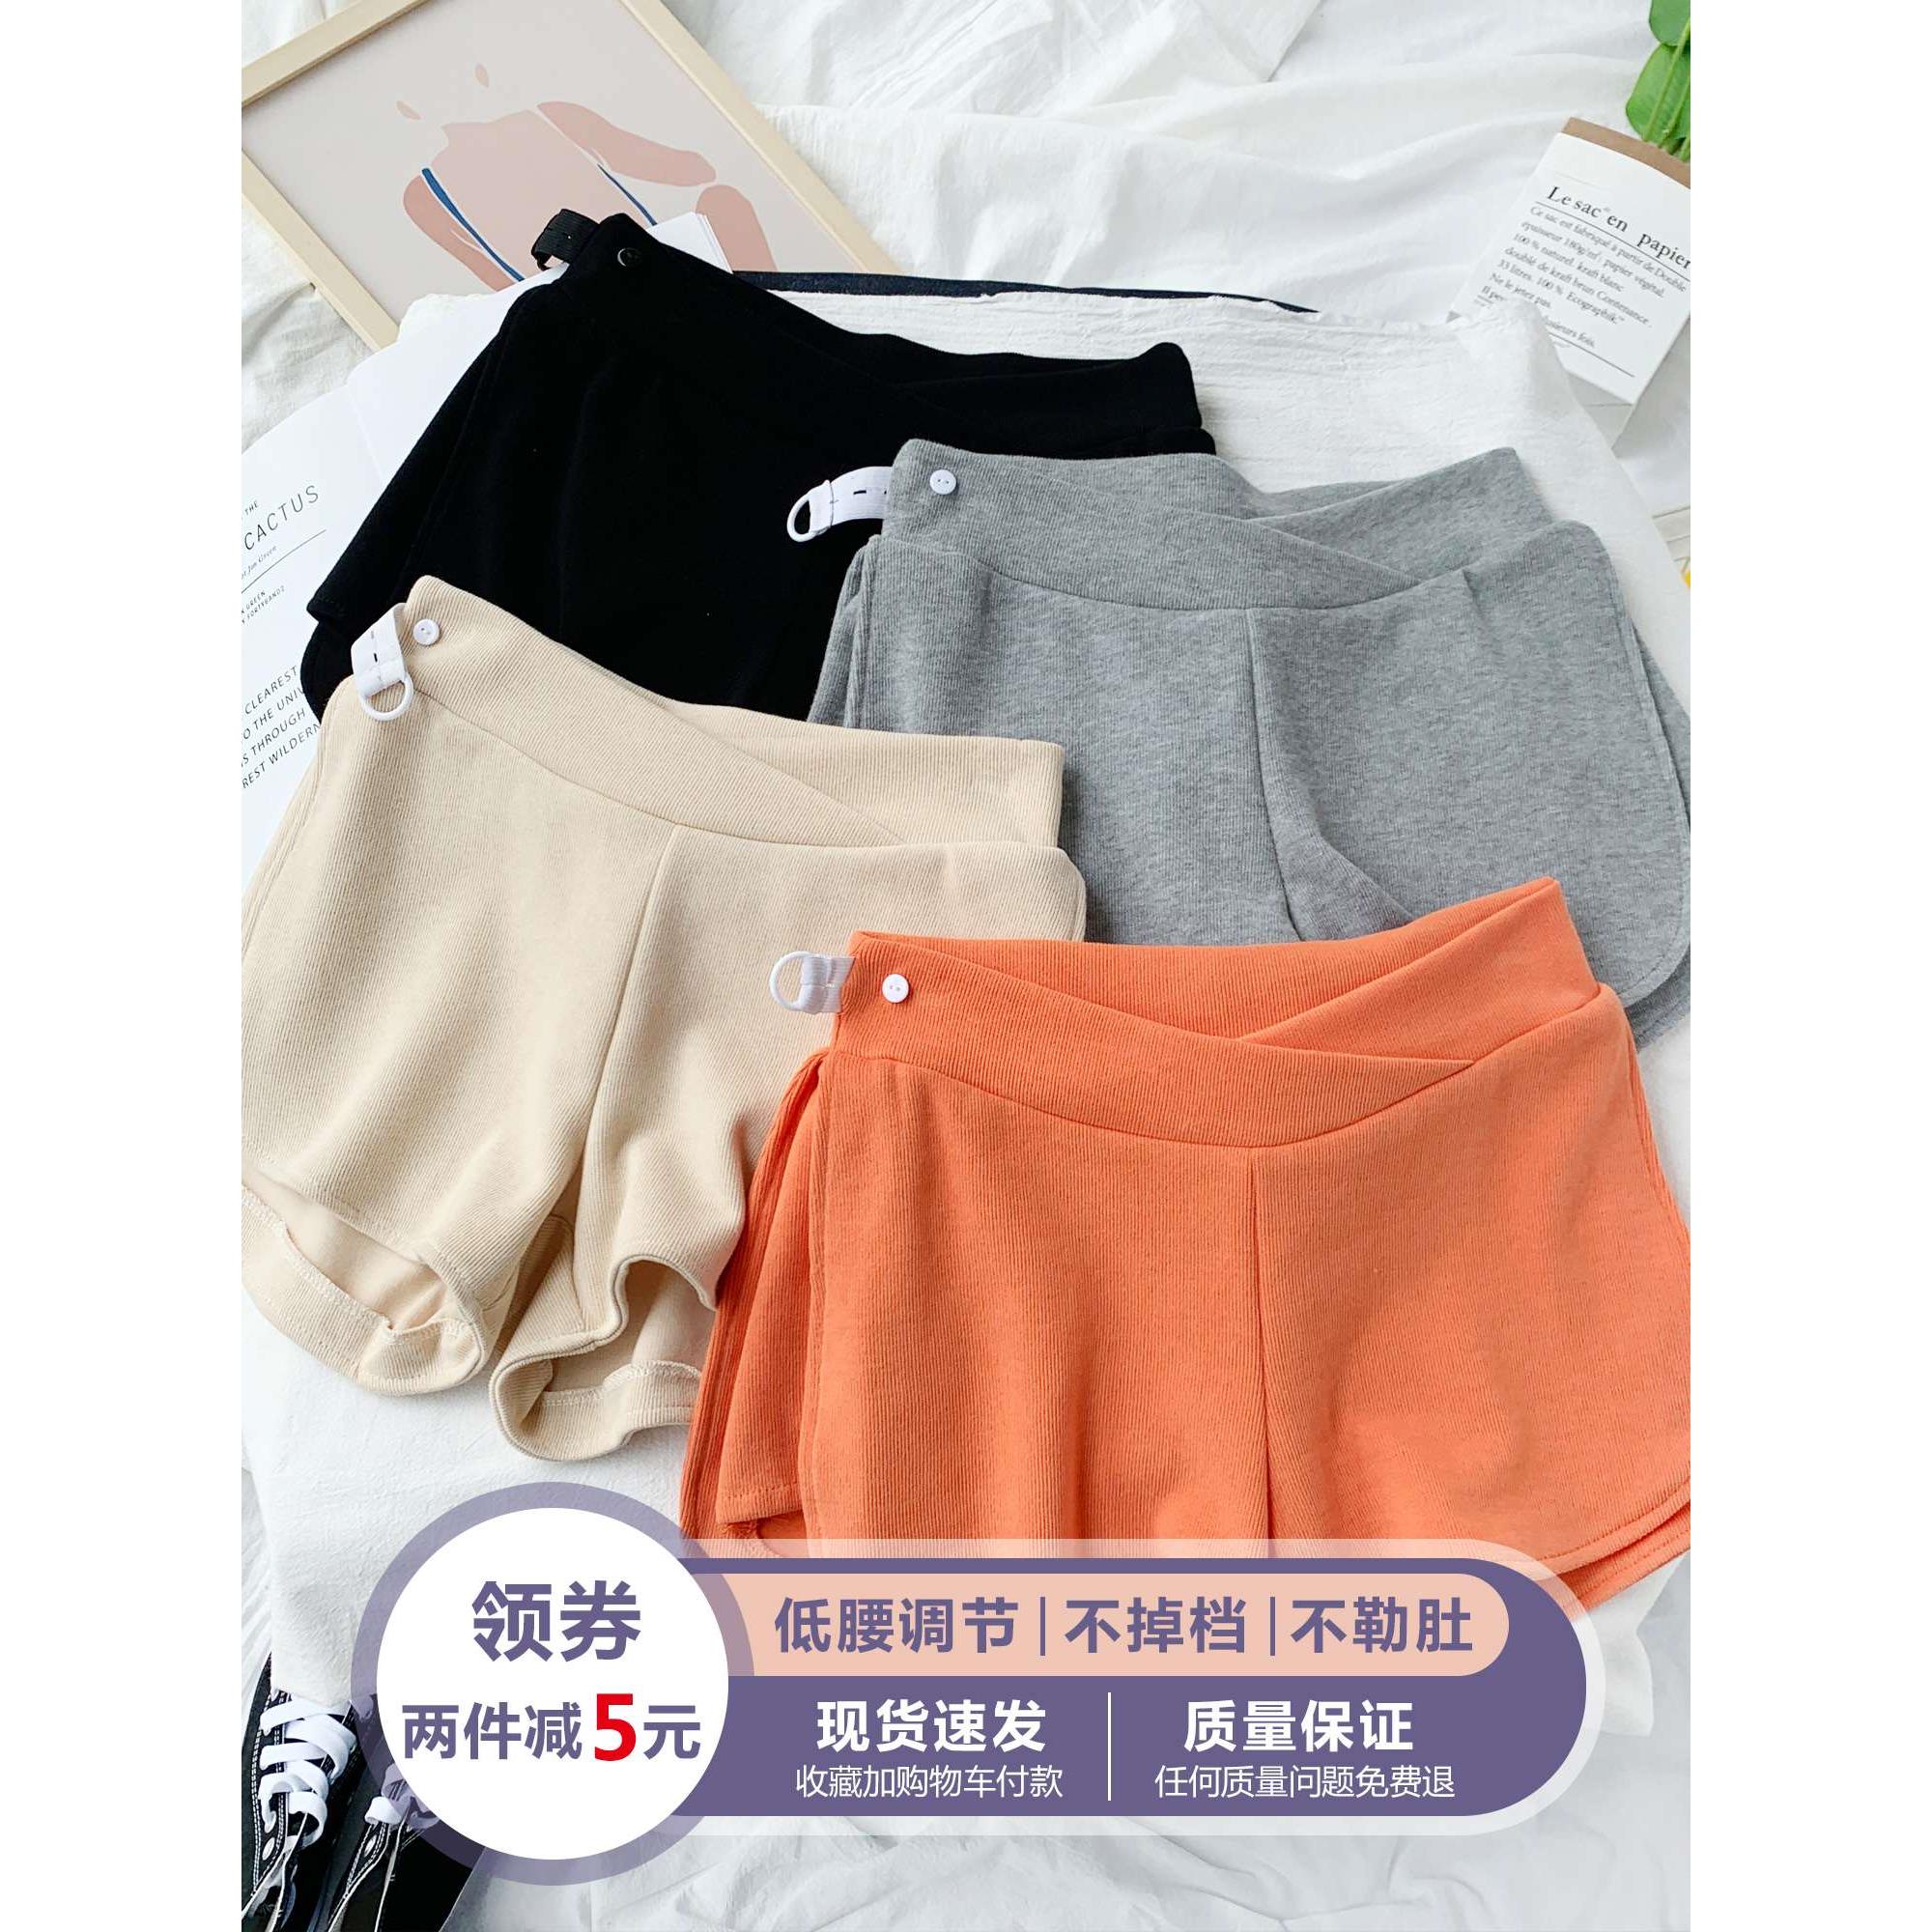 韩国夏季新款孕妇短裤时尚外穿薄款低腰宽松运动安全打底裤子女夏